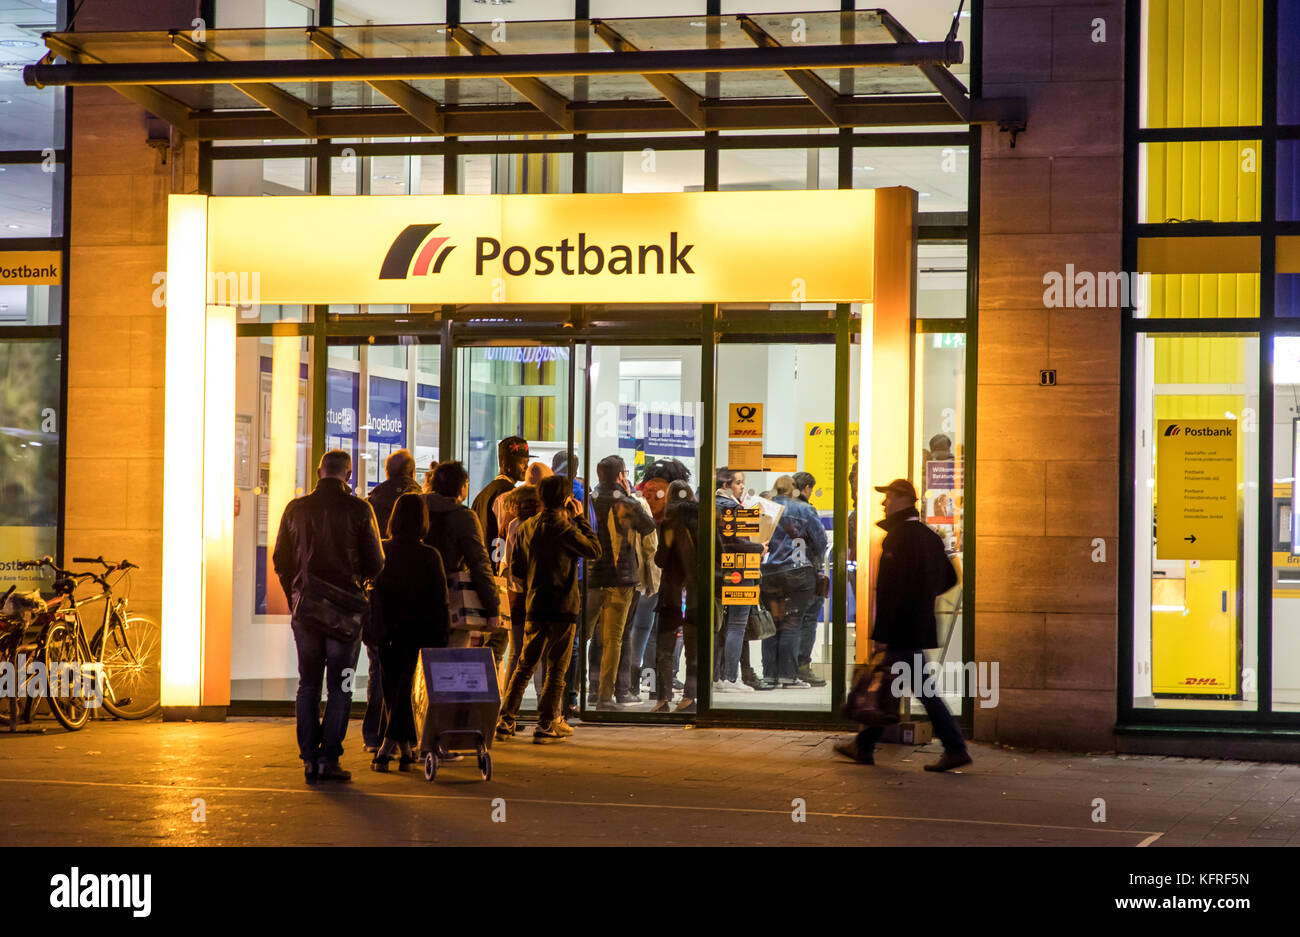 Coda presso l'ingresso principale della post office, Postbank, nel centro della città di Essen, Germania, presso la stazione centrale, Willy-brand-Platz, Foto Stock